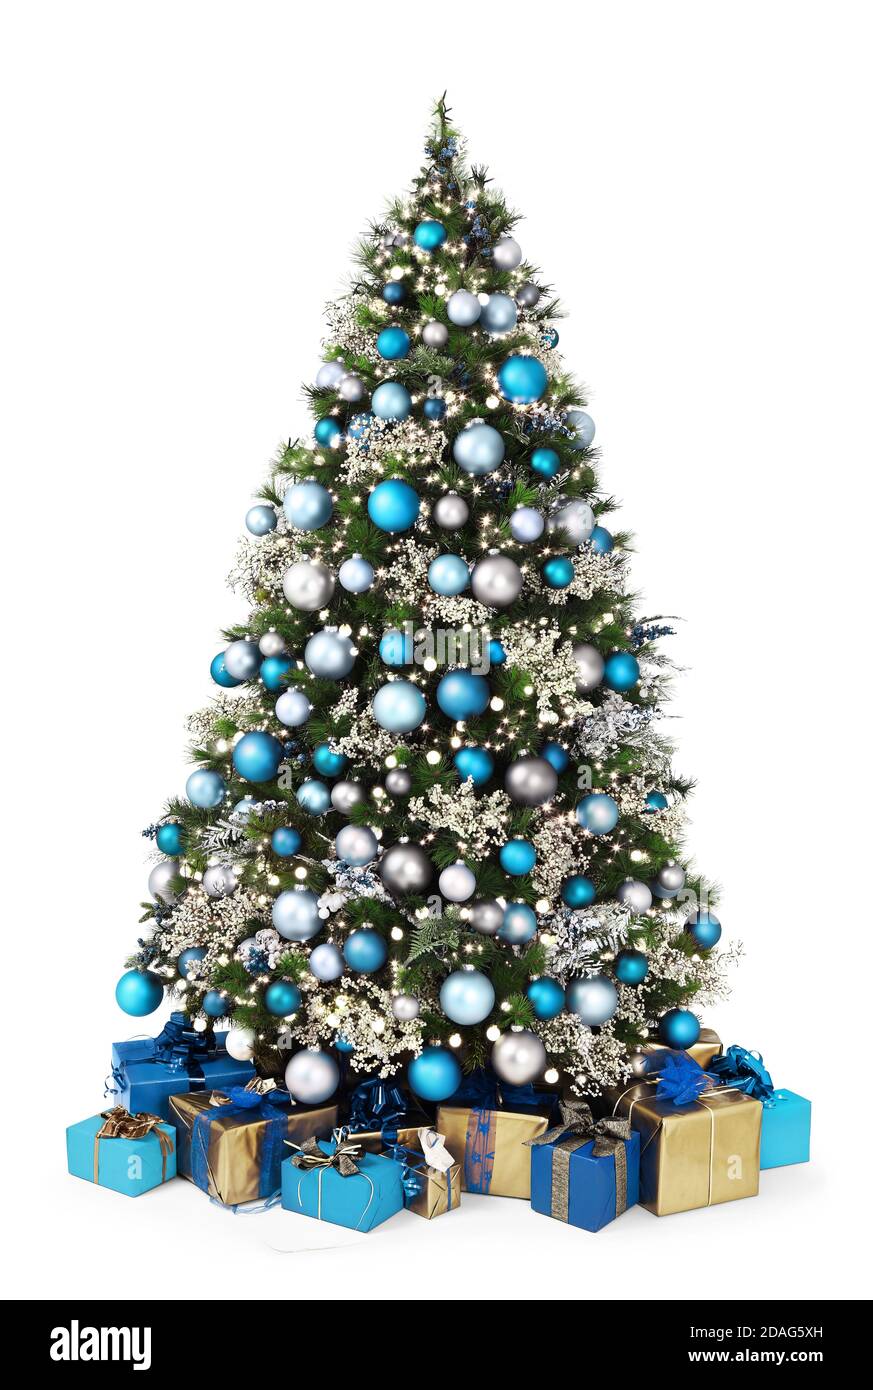 albero di natale decorato pieno di palline blu e argento, decorazioni e  molti pacchetti in confezione regalo isolati su sfondo bianco Foto stock -  Alamy